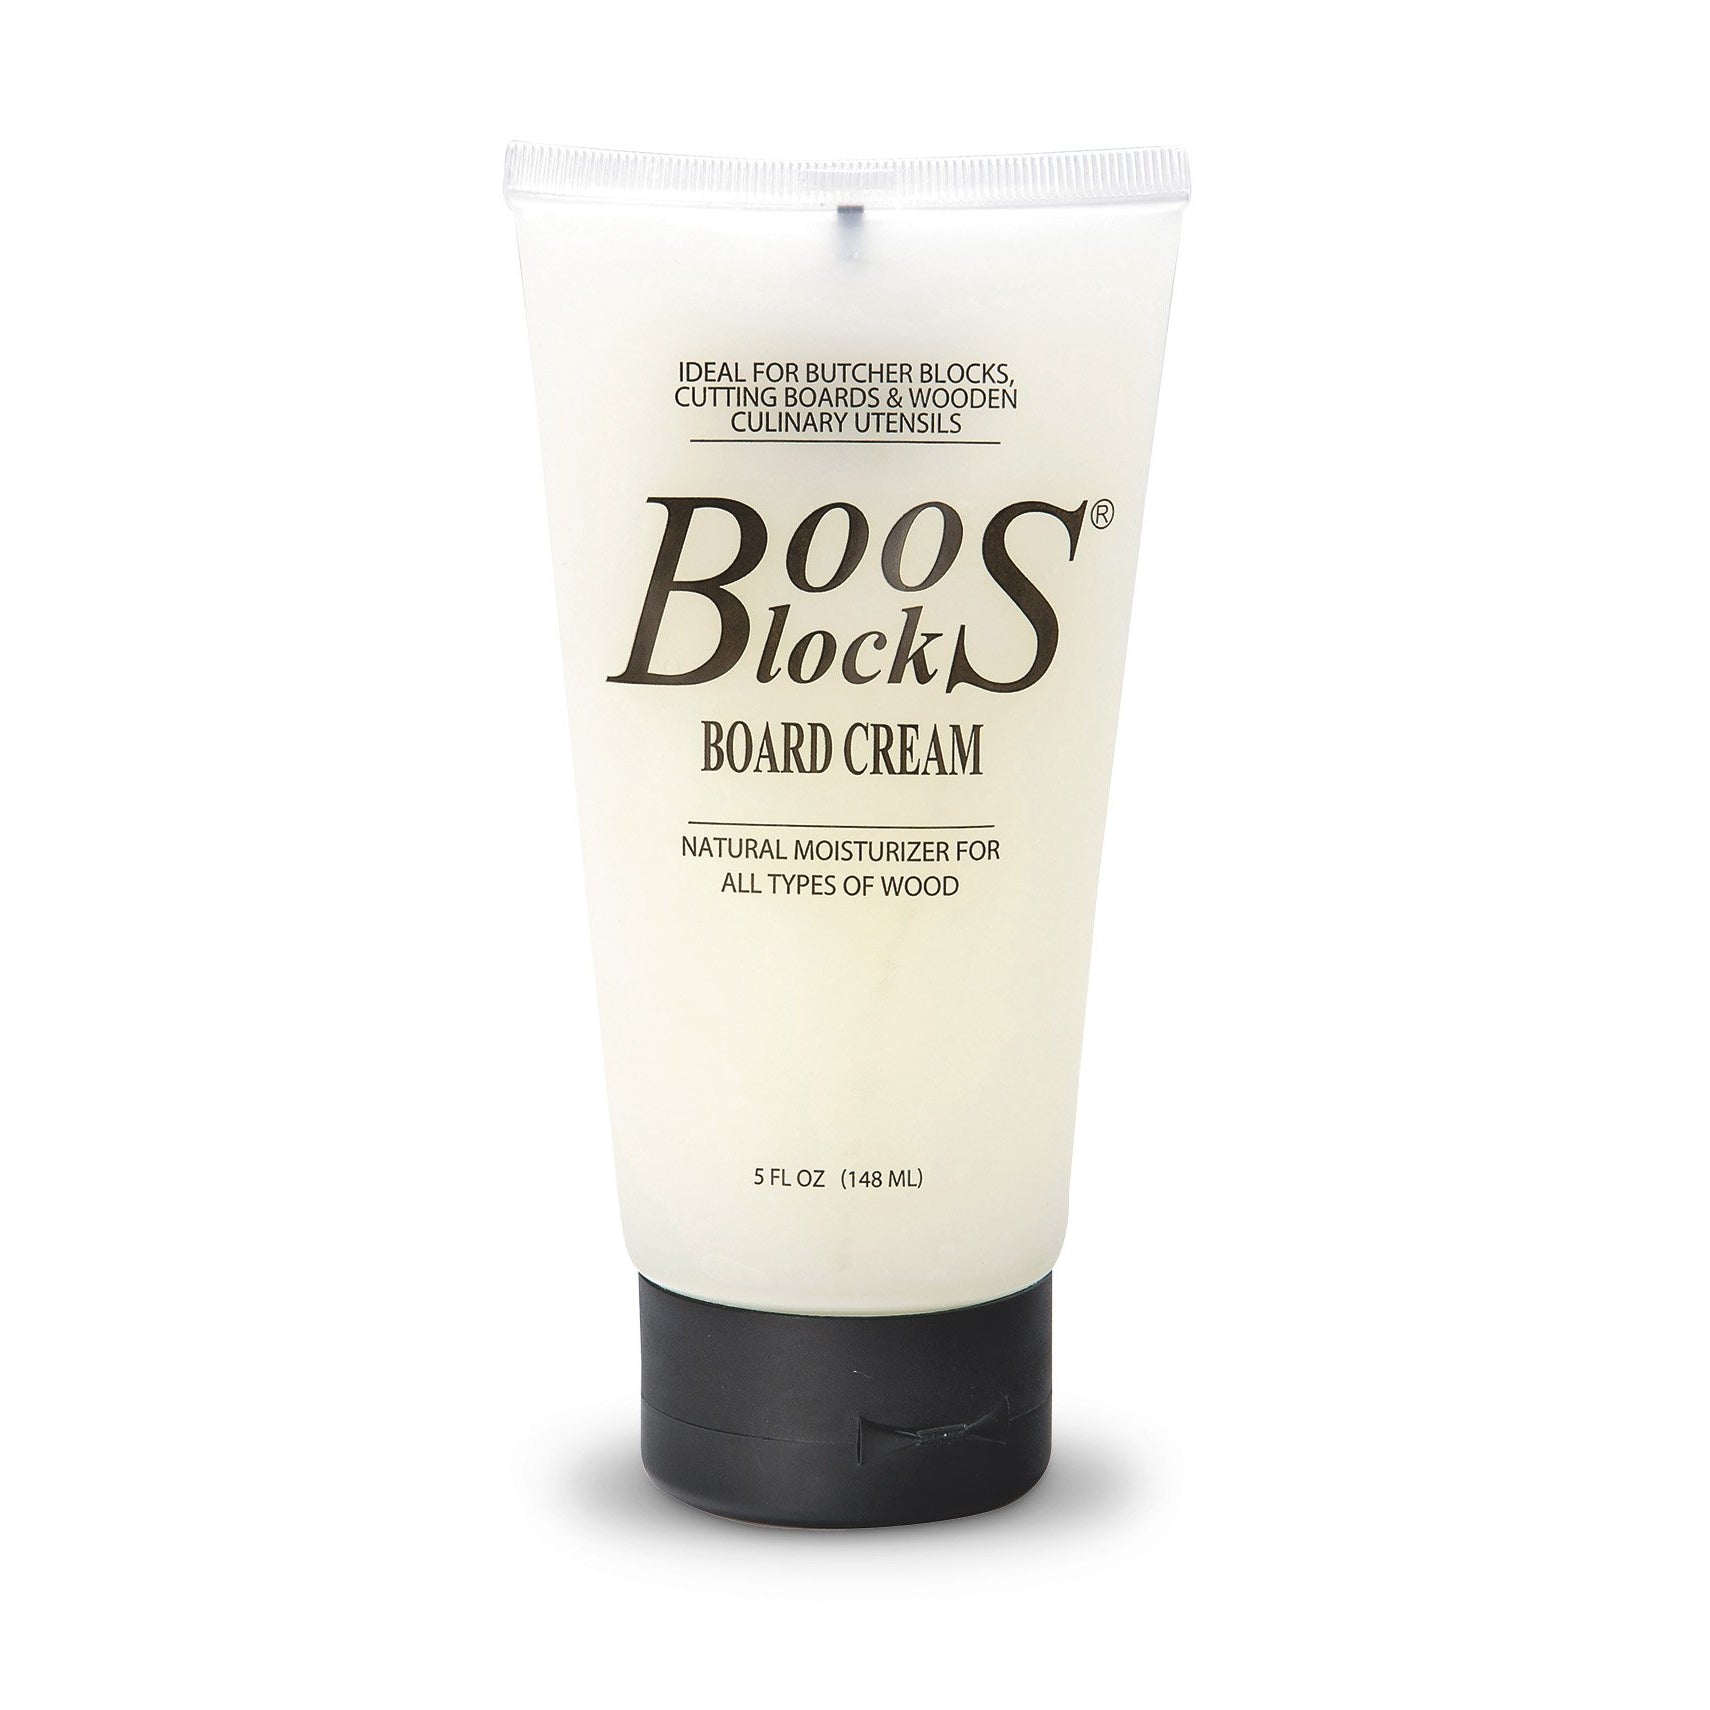 Boo's Board Cream